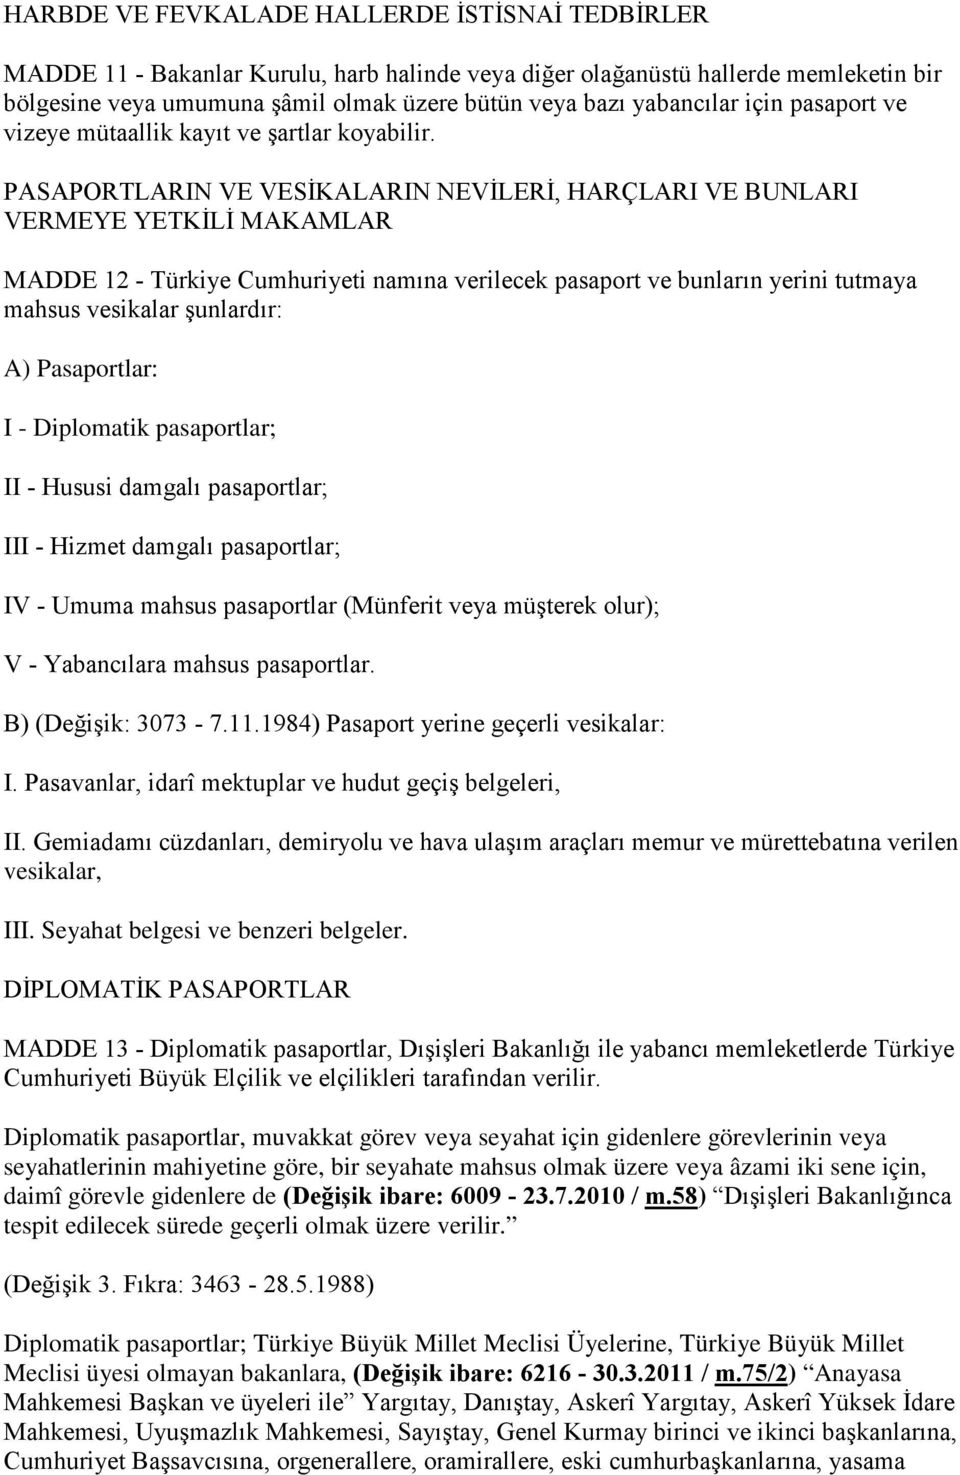 PASAPORTLARIN VE VESİKALARIN NEVİLERİ, HARÇLARI VE BUNLARI VERMEYE YETKİLİ MAKAMLAR MADDE 12 - Türkiye Cumhuriyeti namına verilecek pasaport ve bunların yerini tutmaya mahsus vesikalar şunlardır: A)